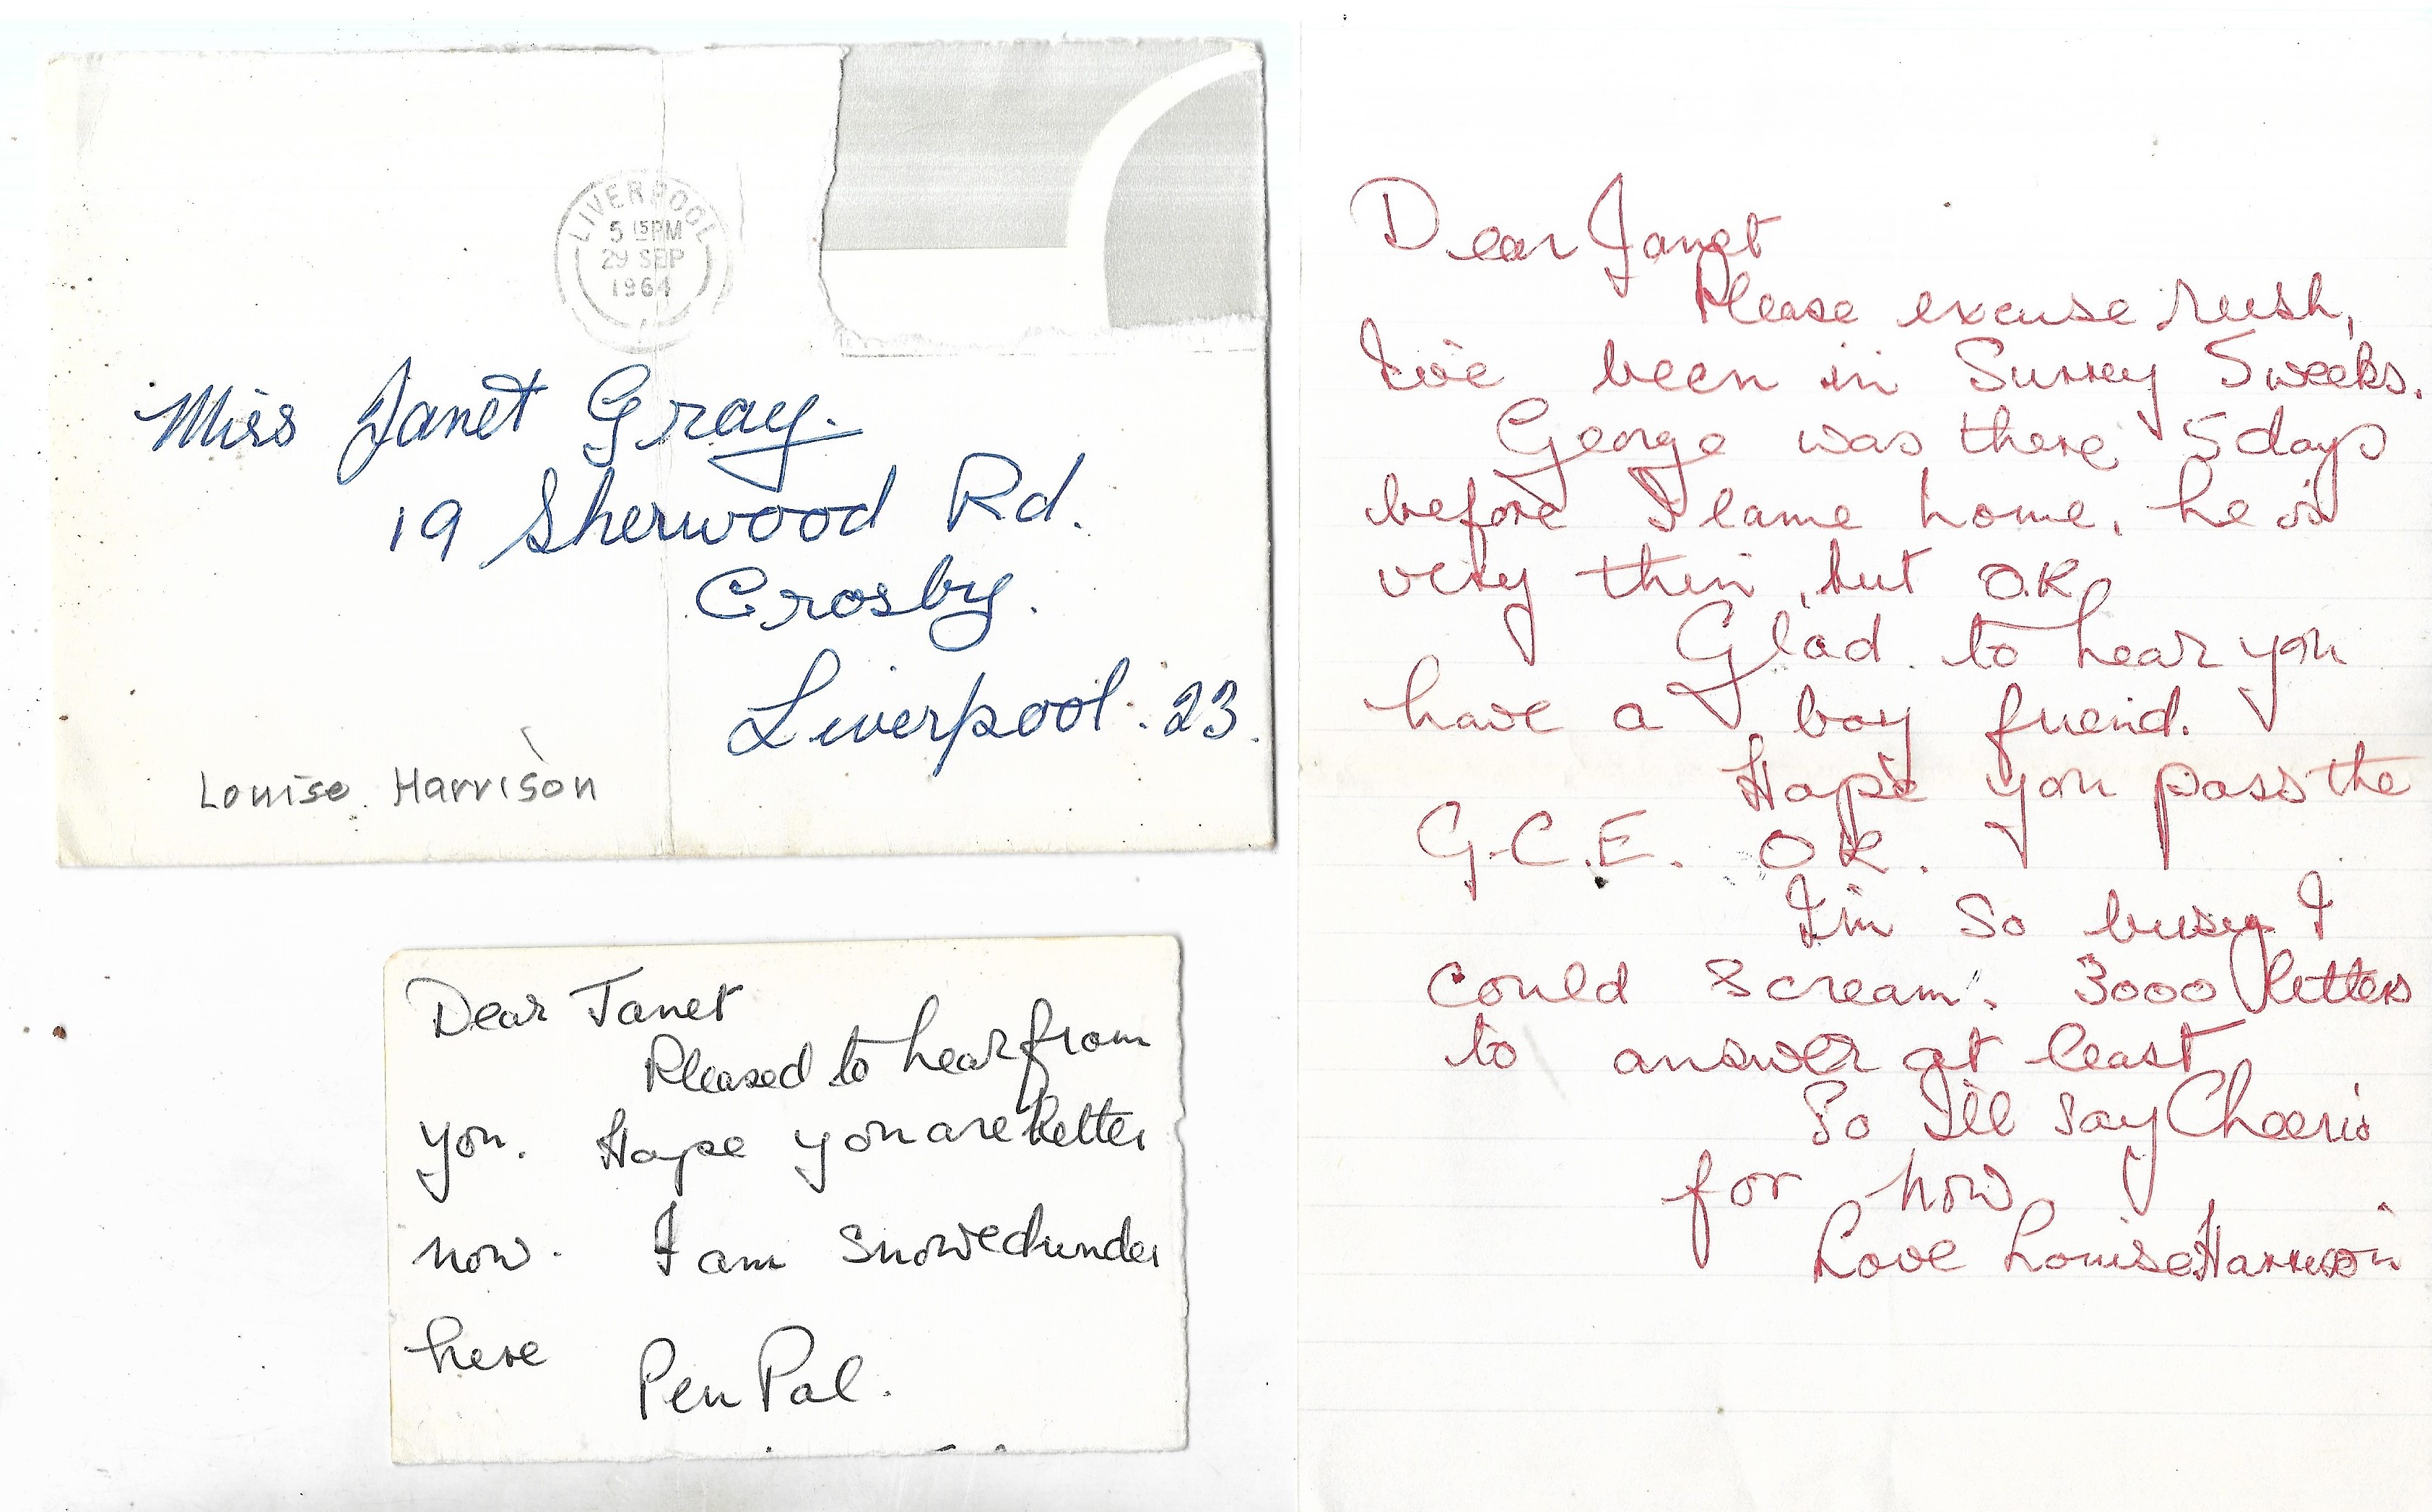 Letter from Louise Harrison to Beatles fan Janet Gray